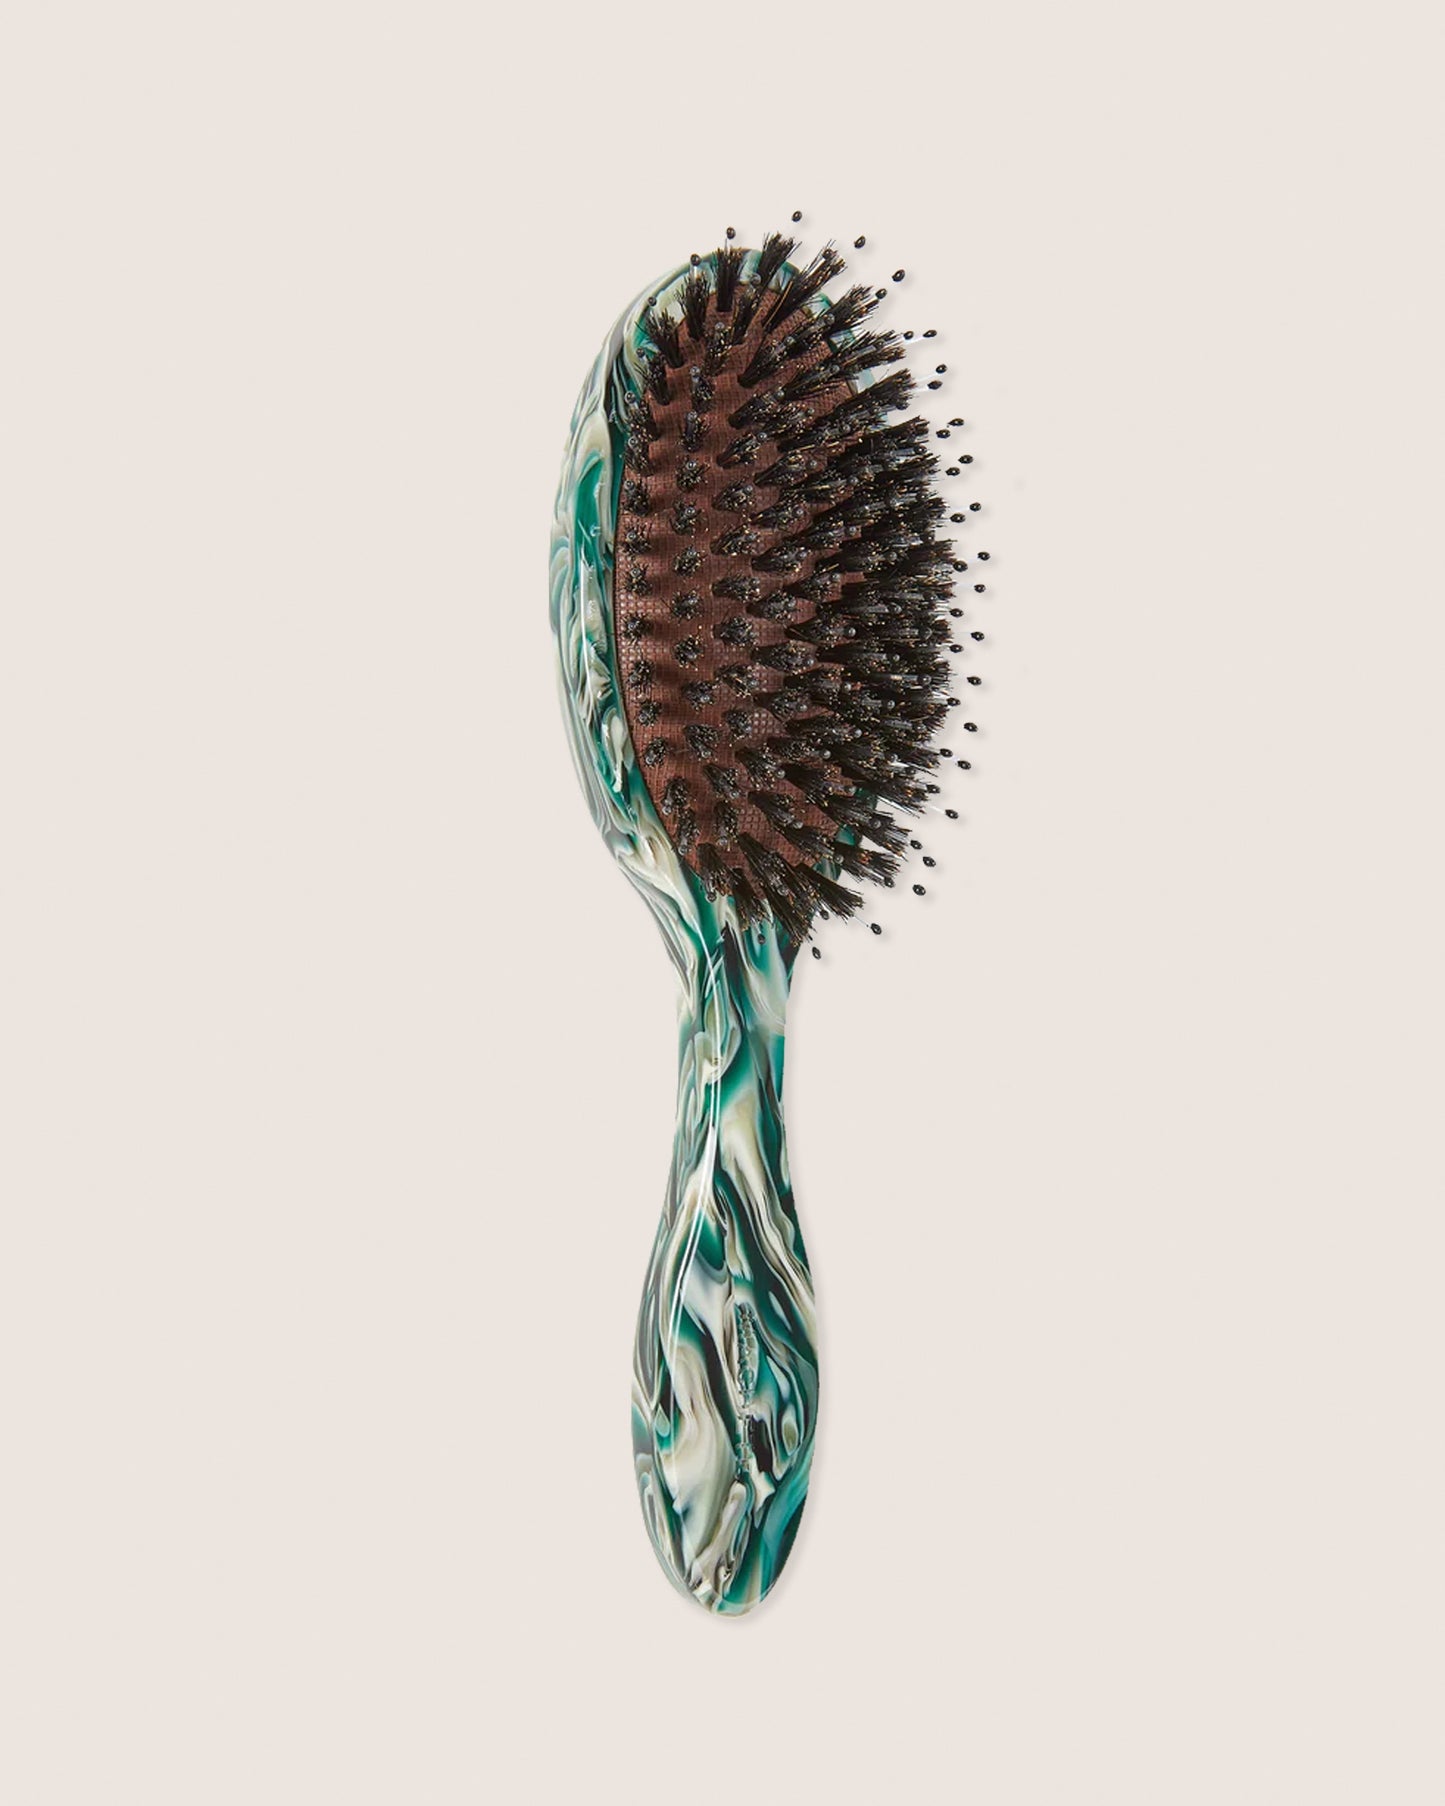 Machete Hair Brush - Stromanthe